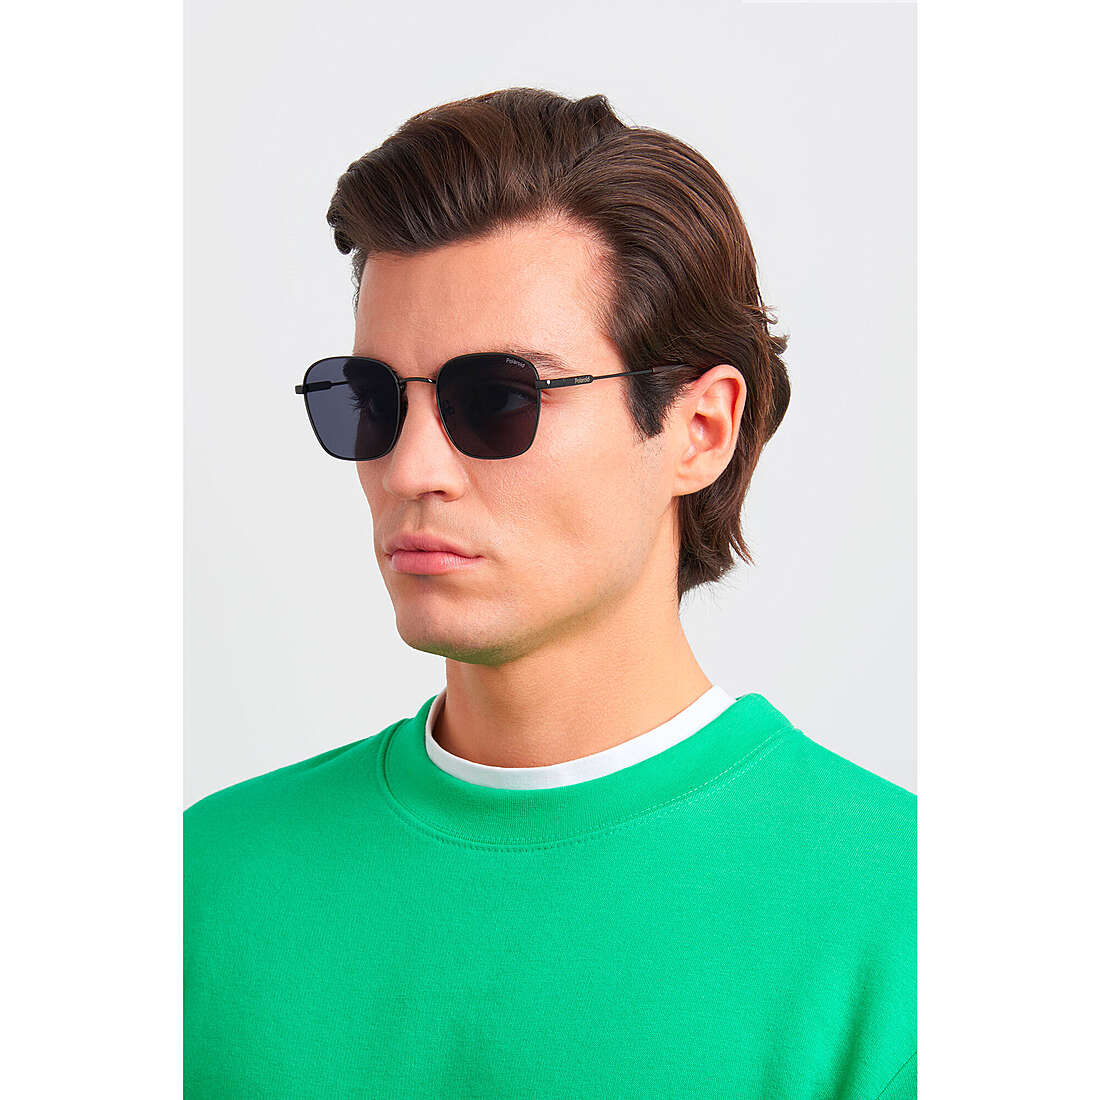 Polaroid occhiali da sole Cool unisex 20480980753M9 indosso